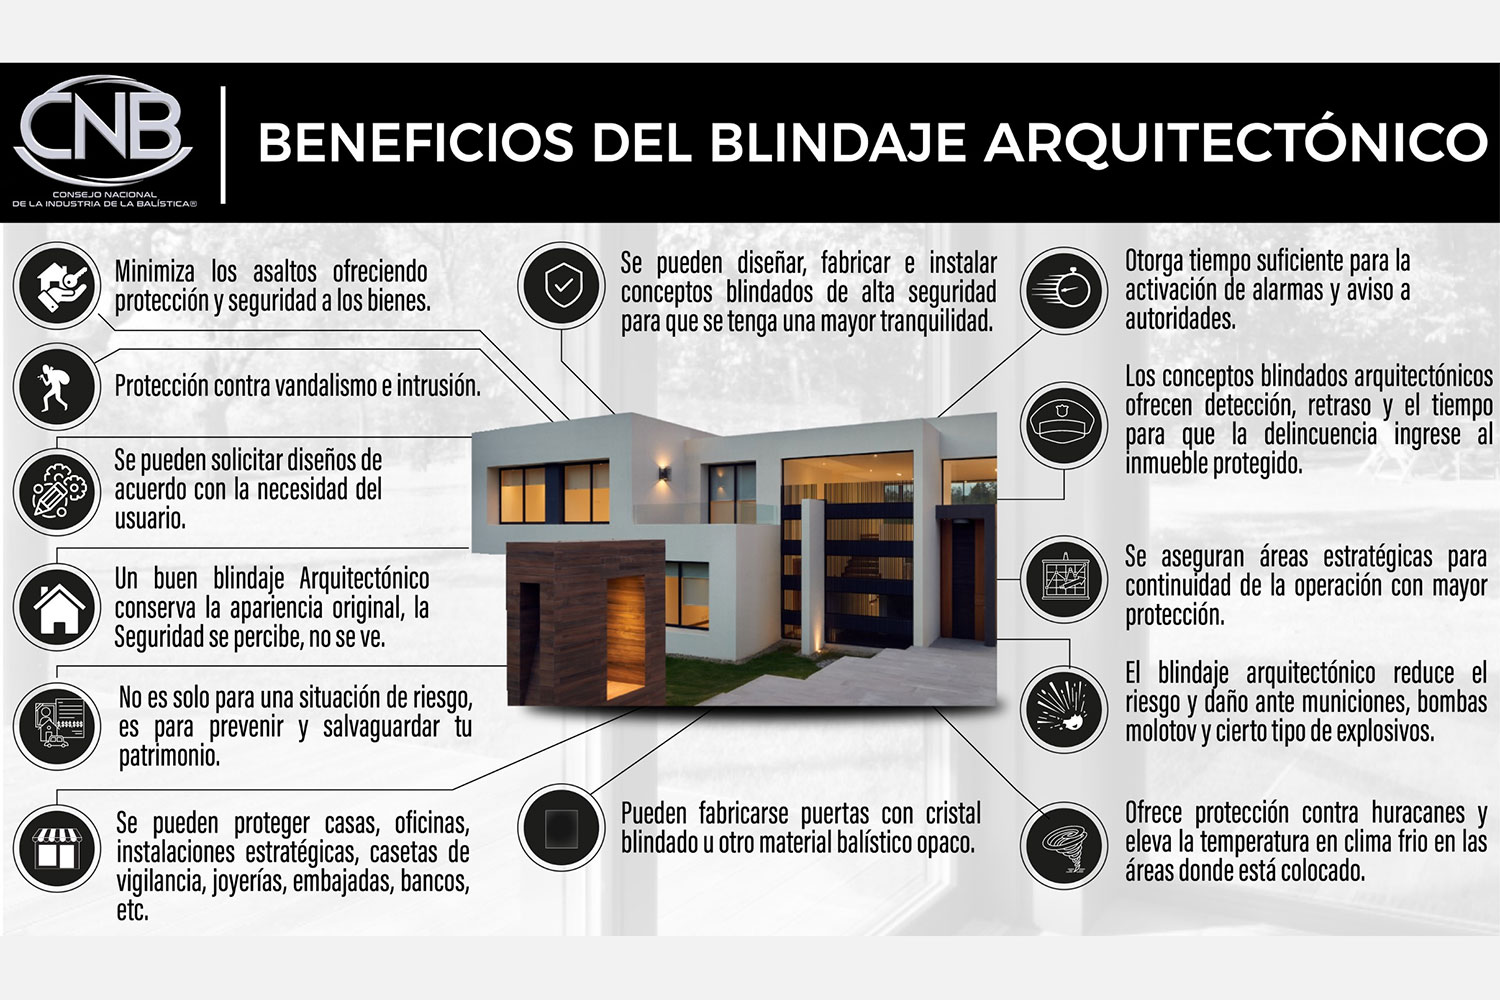 Beneficios del blindaje arquitectónico según el Consejo Nacional de la Industria de la Balística (CNB) de México.